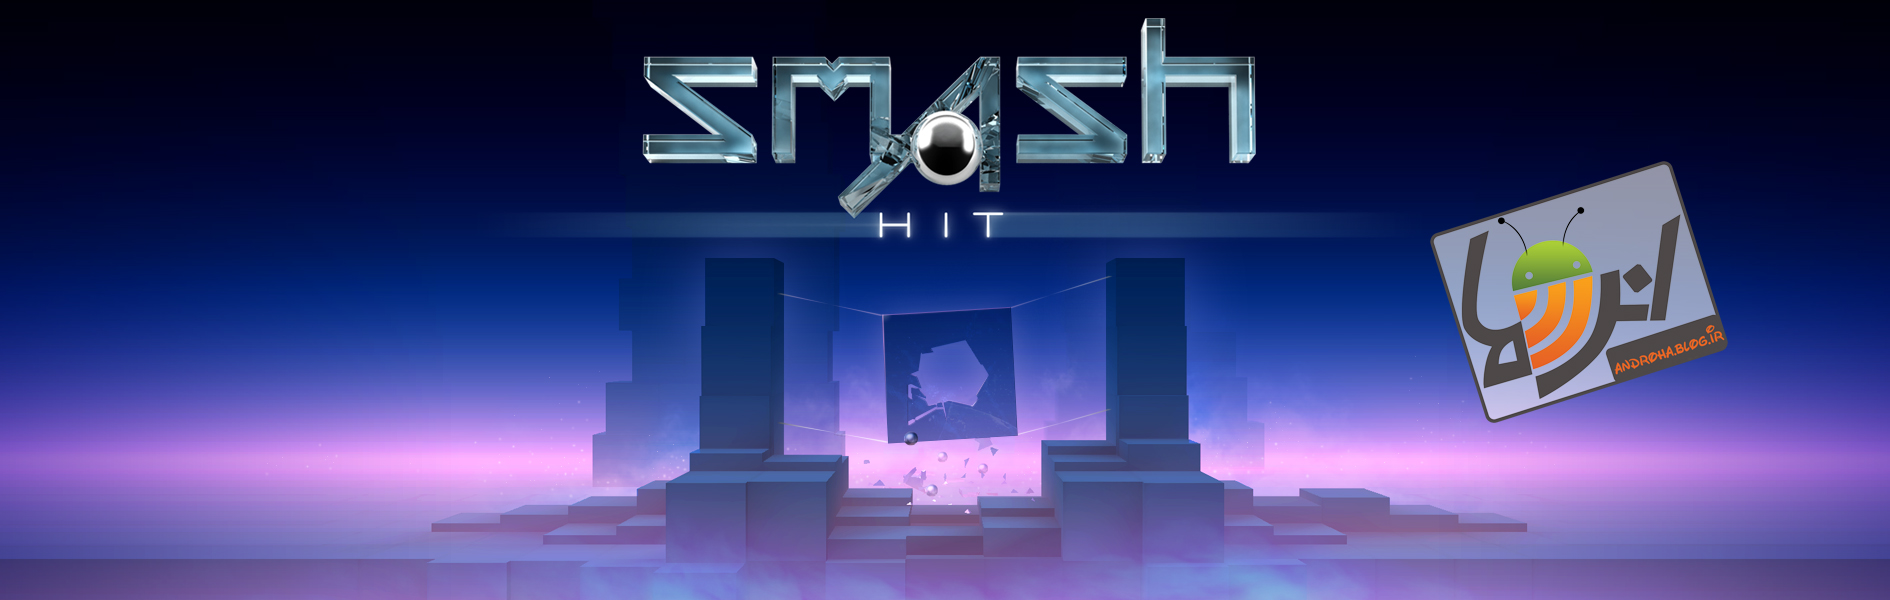 دانلود Smash Hit 1.3.3 نسخه پرمیوم بازی بسیار زیبا و پرطرفدار شکستن کریستال ها